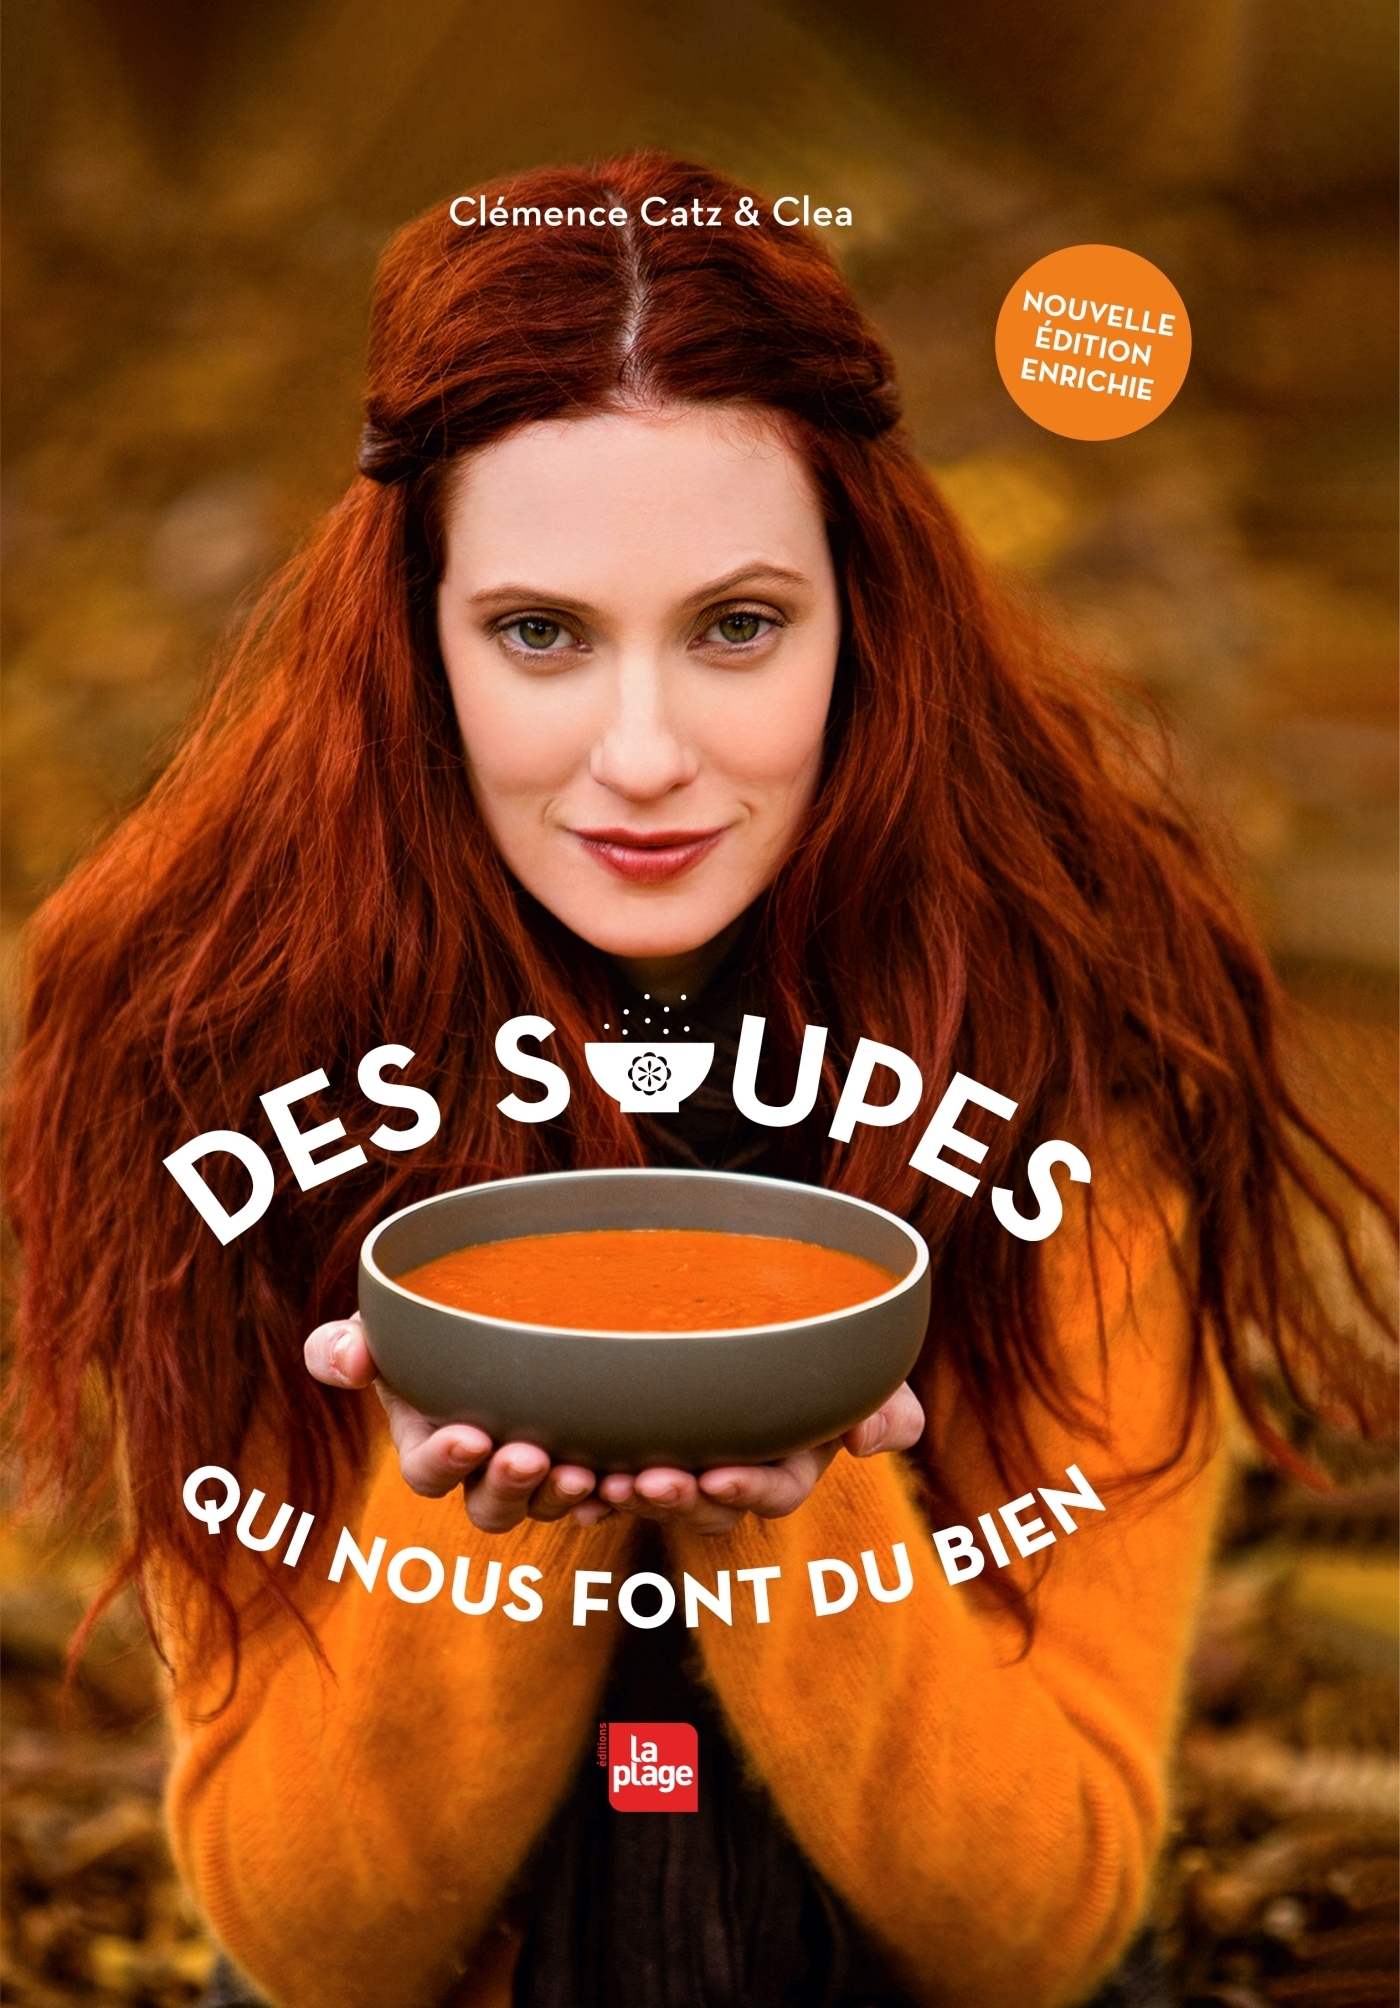  Les soupes minceur - CHAVANNE, Philippe - Livres